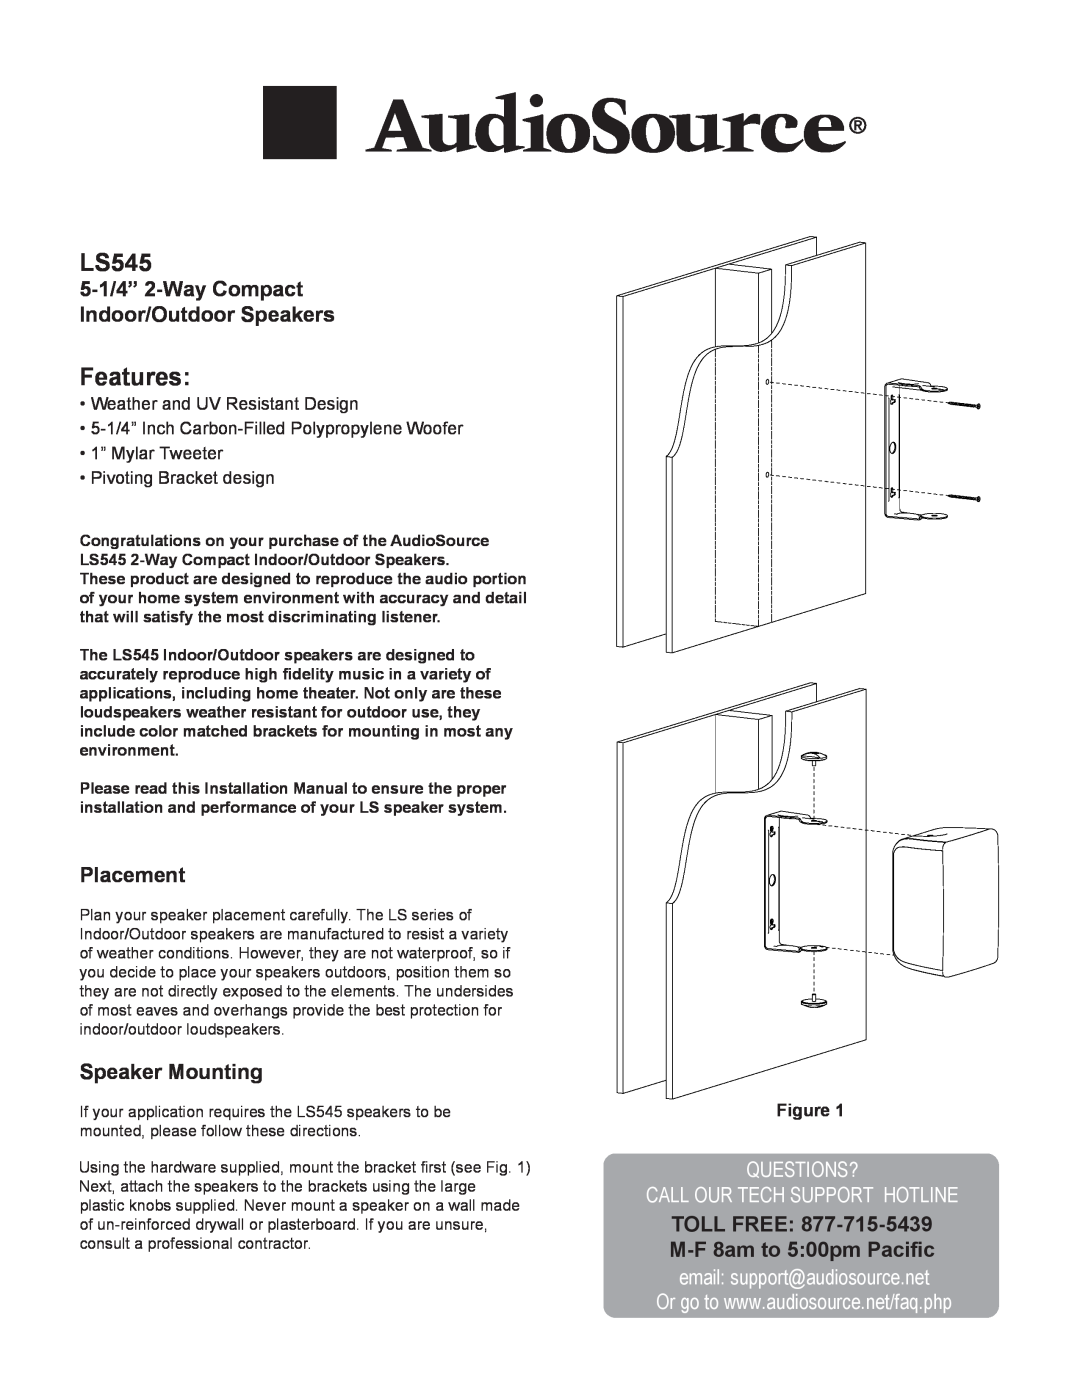 AudioSource 5-1/4" 2-way compact indoor/outdoor speakers installation manual 5-1/4” 2-WayCompact Indoor/Outdoor Speakers 